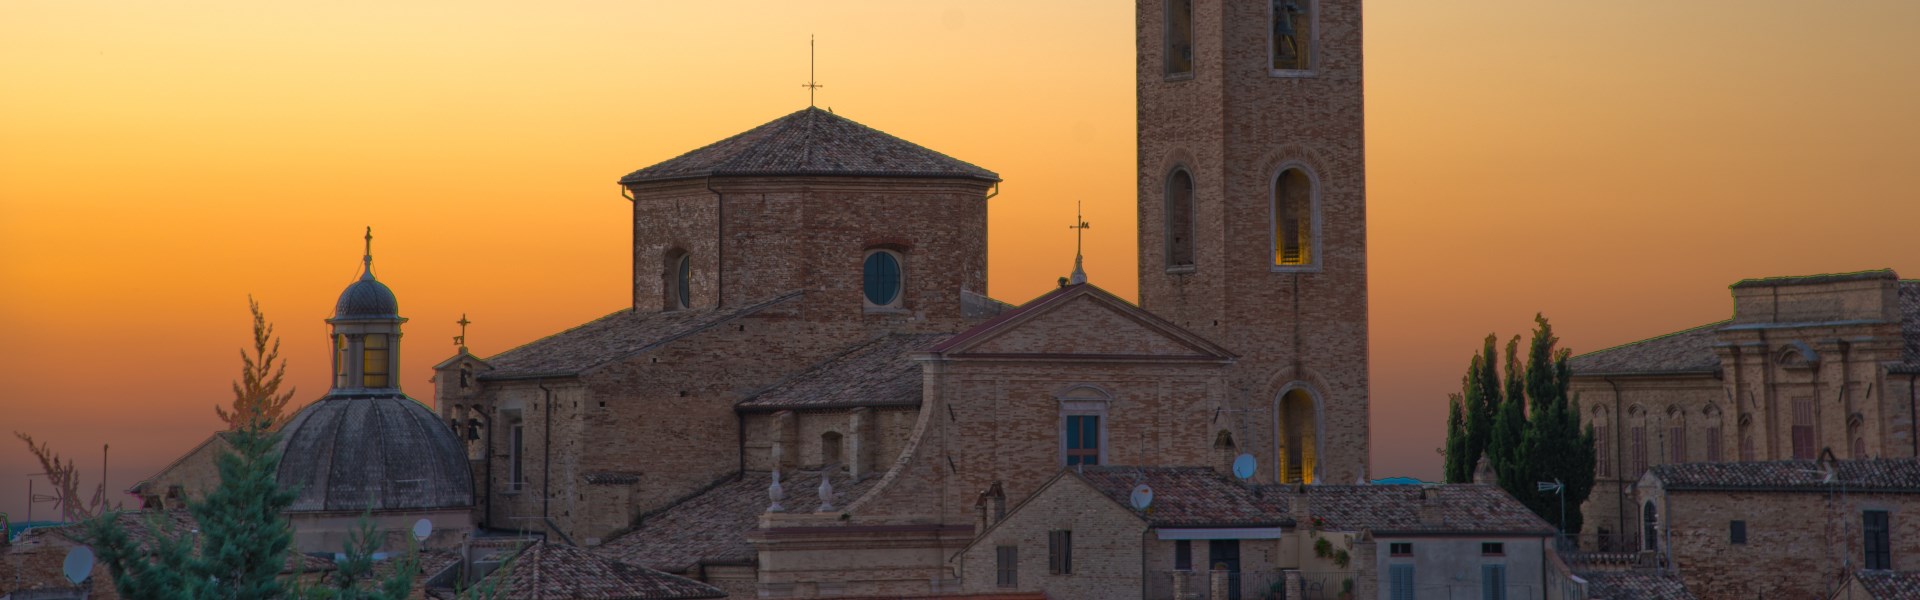 Ripatransone - Cattedrale Basilica dei Ss. Gregorio e Margherita